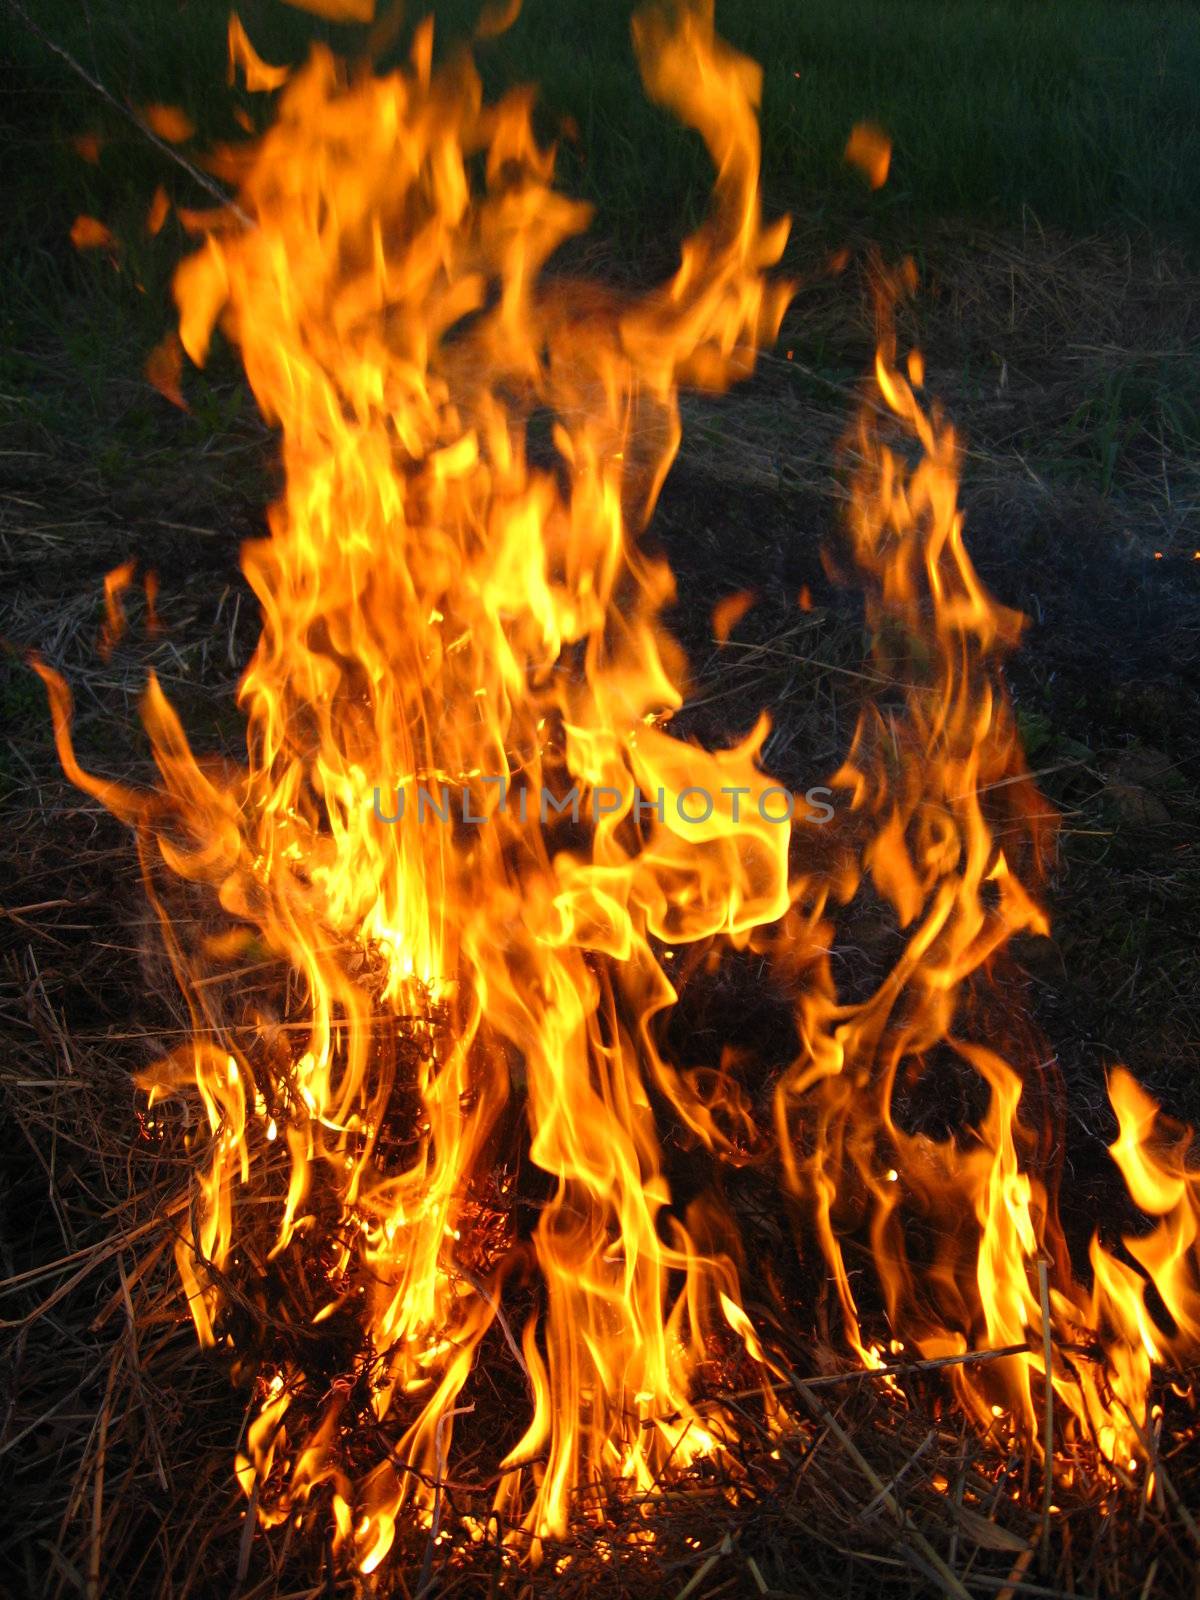 Fire in the field by alexmak